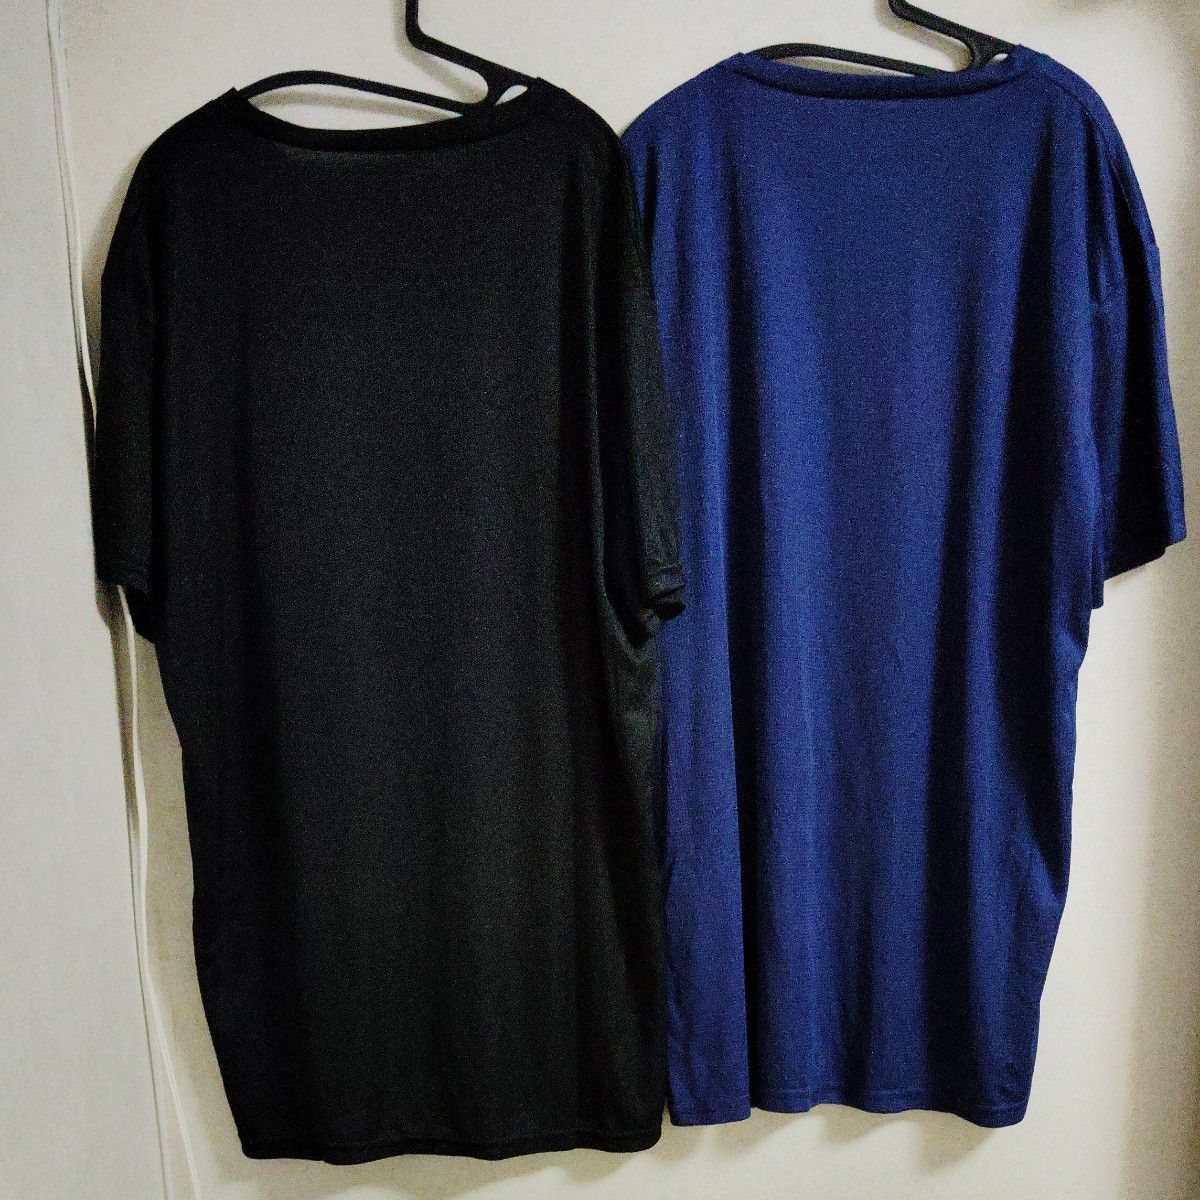 メンズ　新品　XXL Tシャツ　2枚セット　大きいサイズ　ビッグサイズ　未使用　半袖　3L　ドライ　無地　黒　ブルー　速乾　春夏